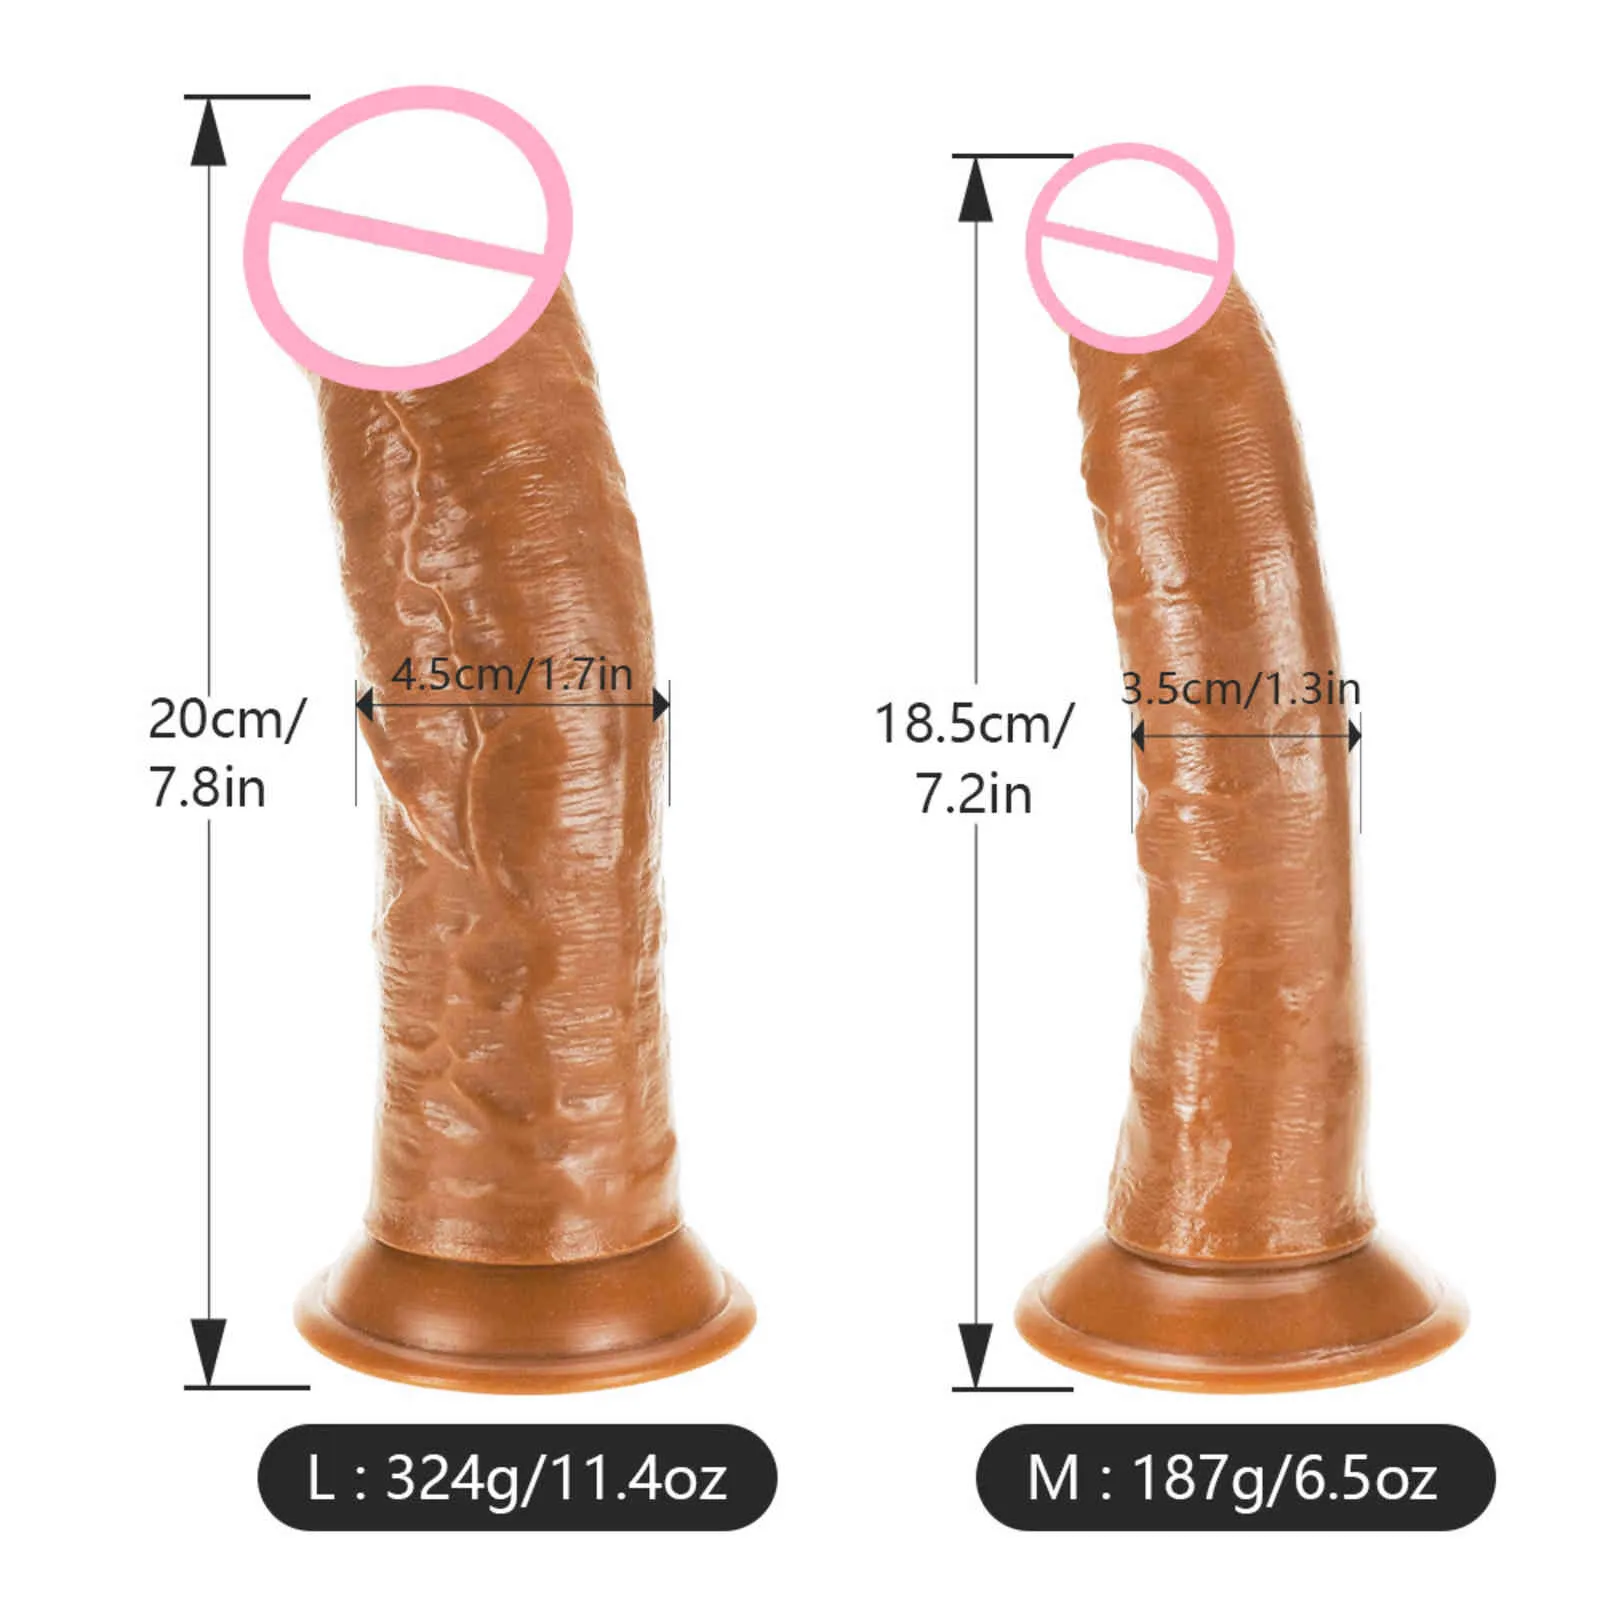 Strapon Realistic Dildo le donne Skin Senno enormi masturbatori del pene Dildos Dildos Assiction Coppa Clitorine Stimolazione Sex Toys5354185